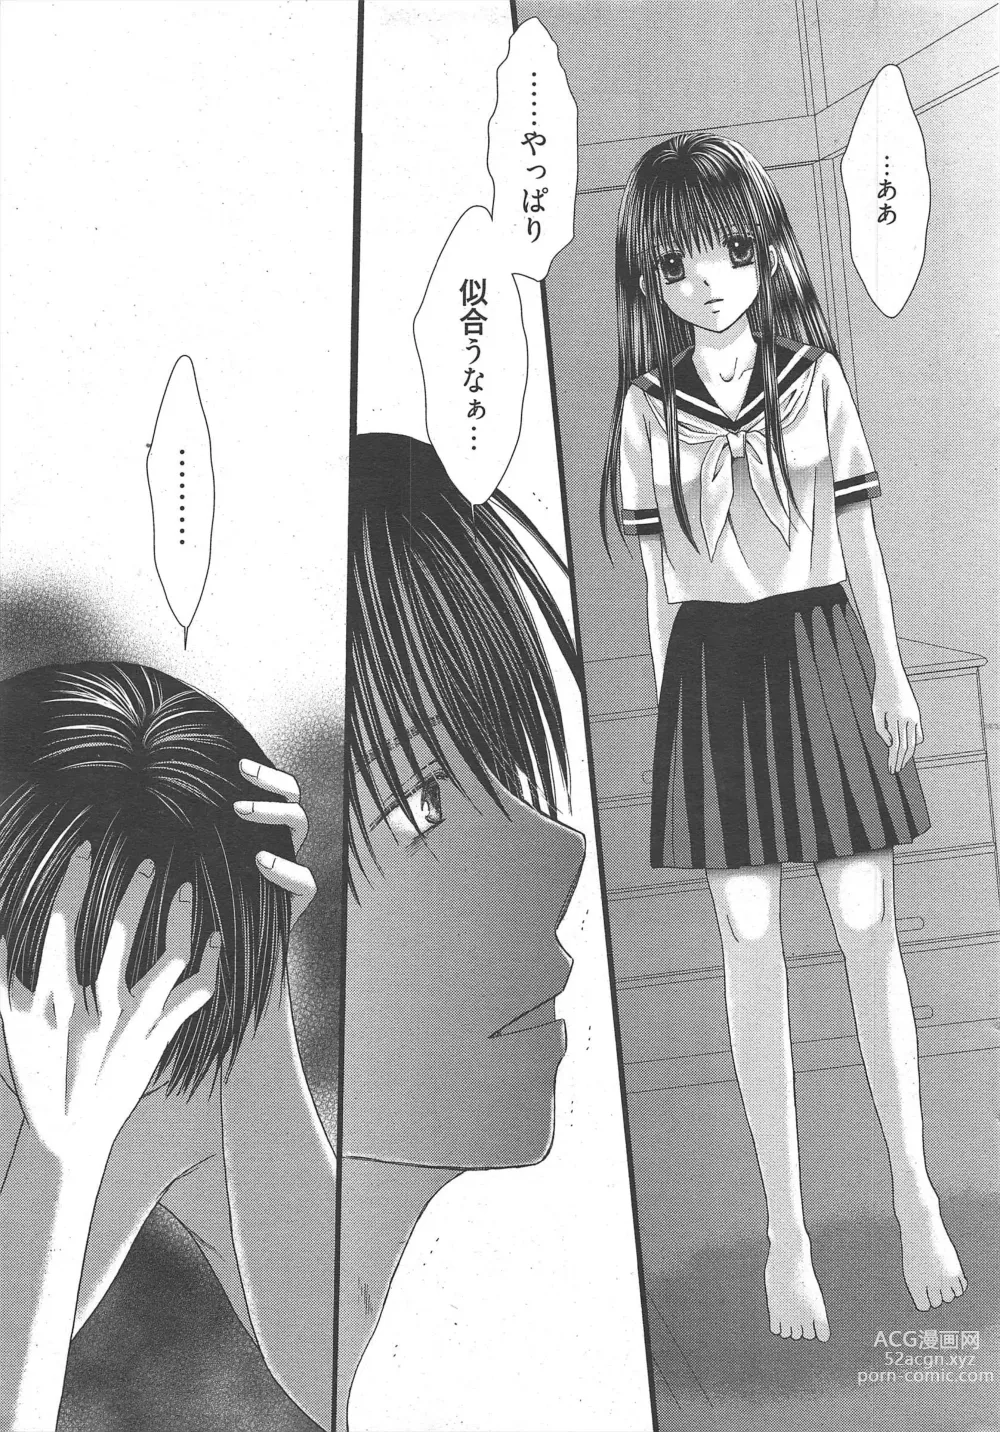 Page 21 of manga Manga Bangaichi 2011-03